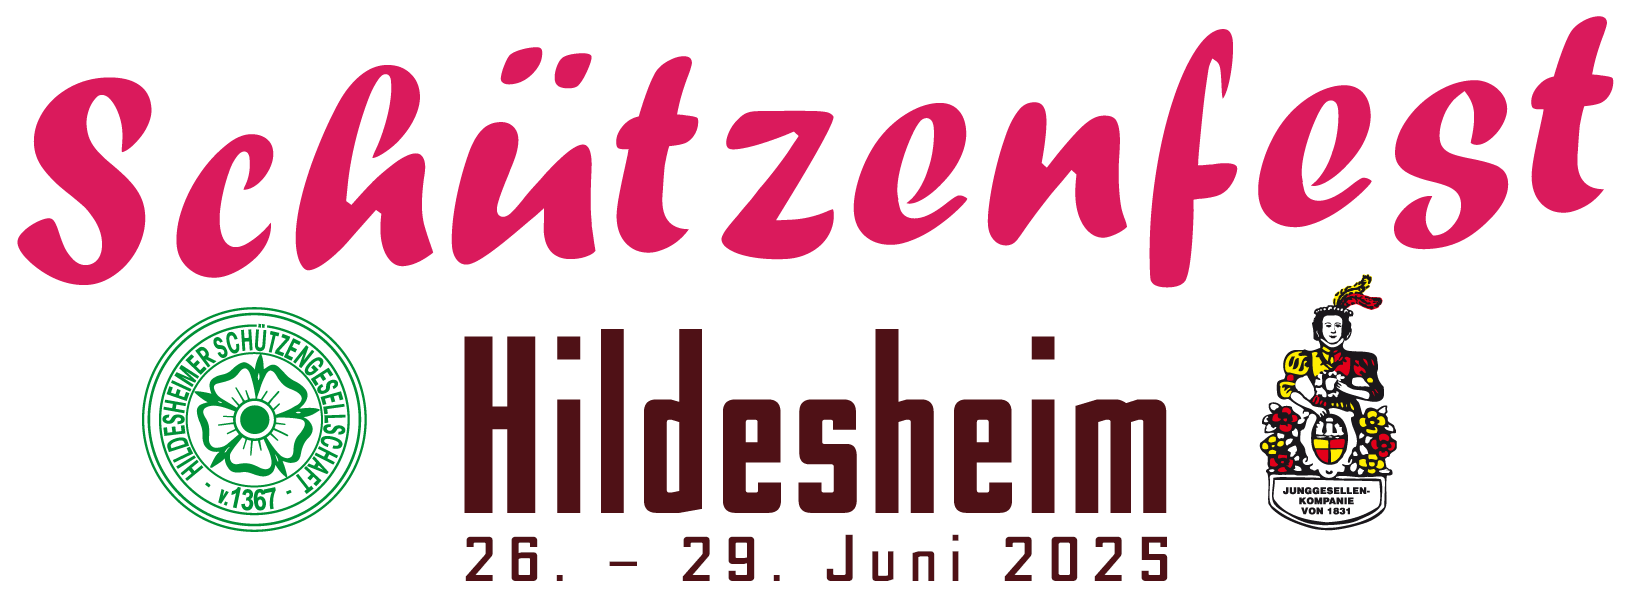 Schützenfest Hildesheim